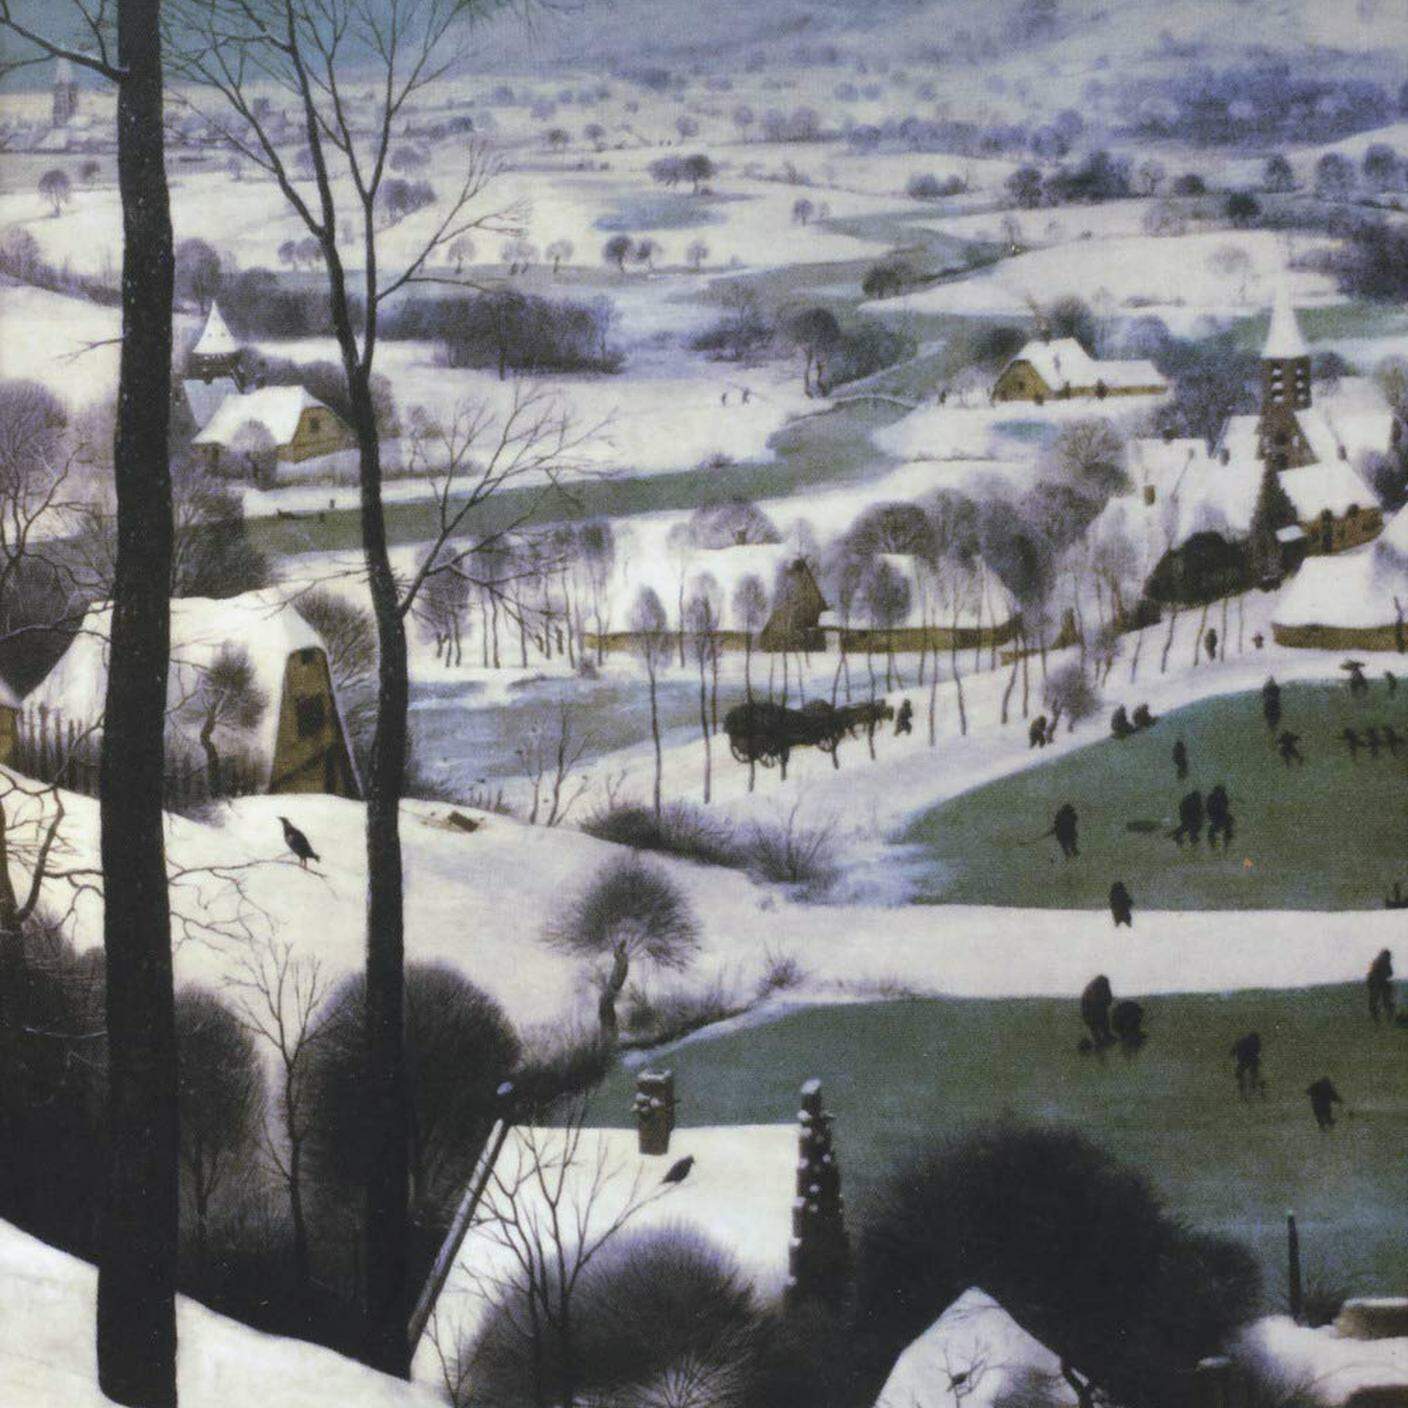 Alessandro Vanoli, "Inverno. Il racconto dell’attesa", Il Mulino (dettaglio copertina)